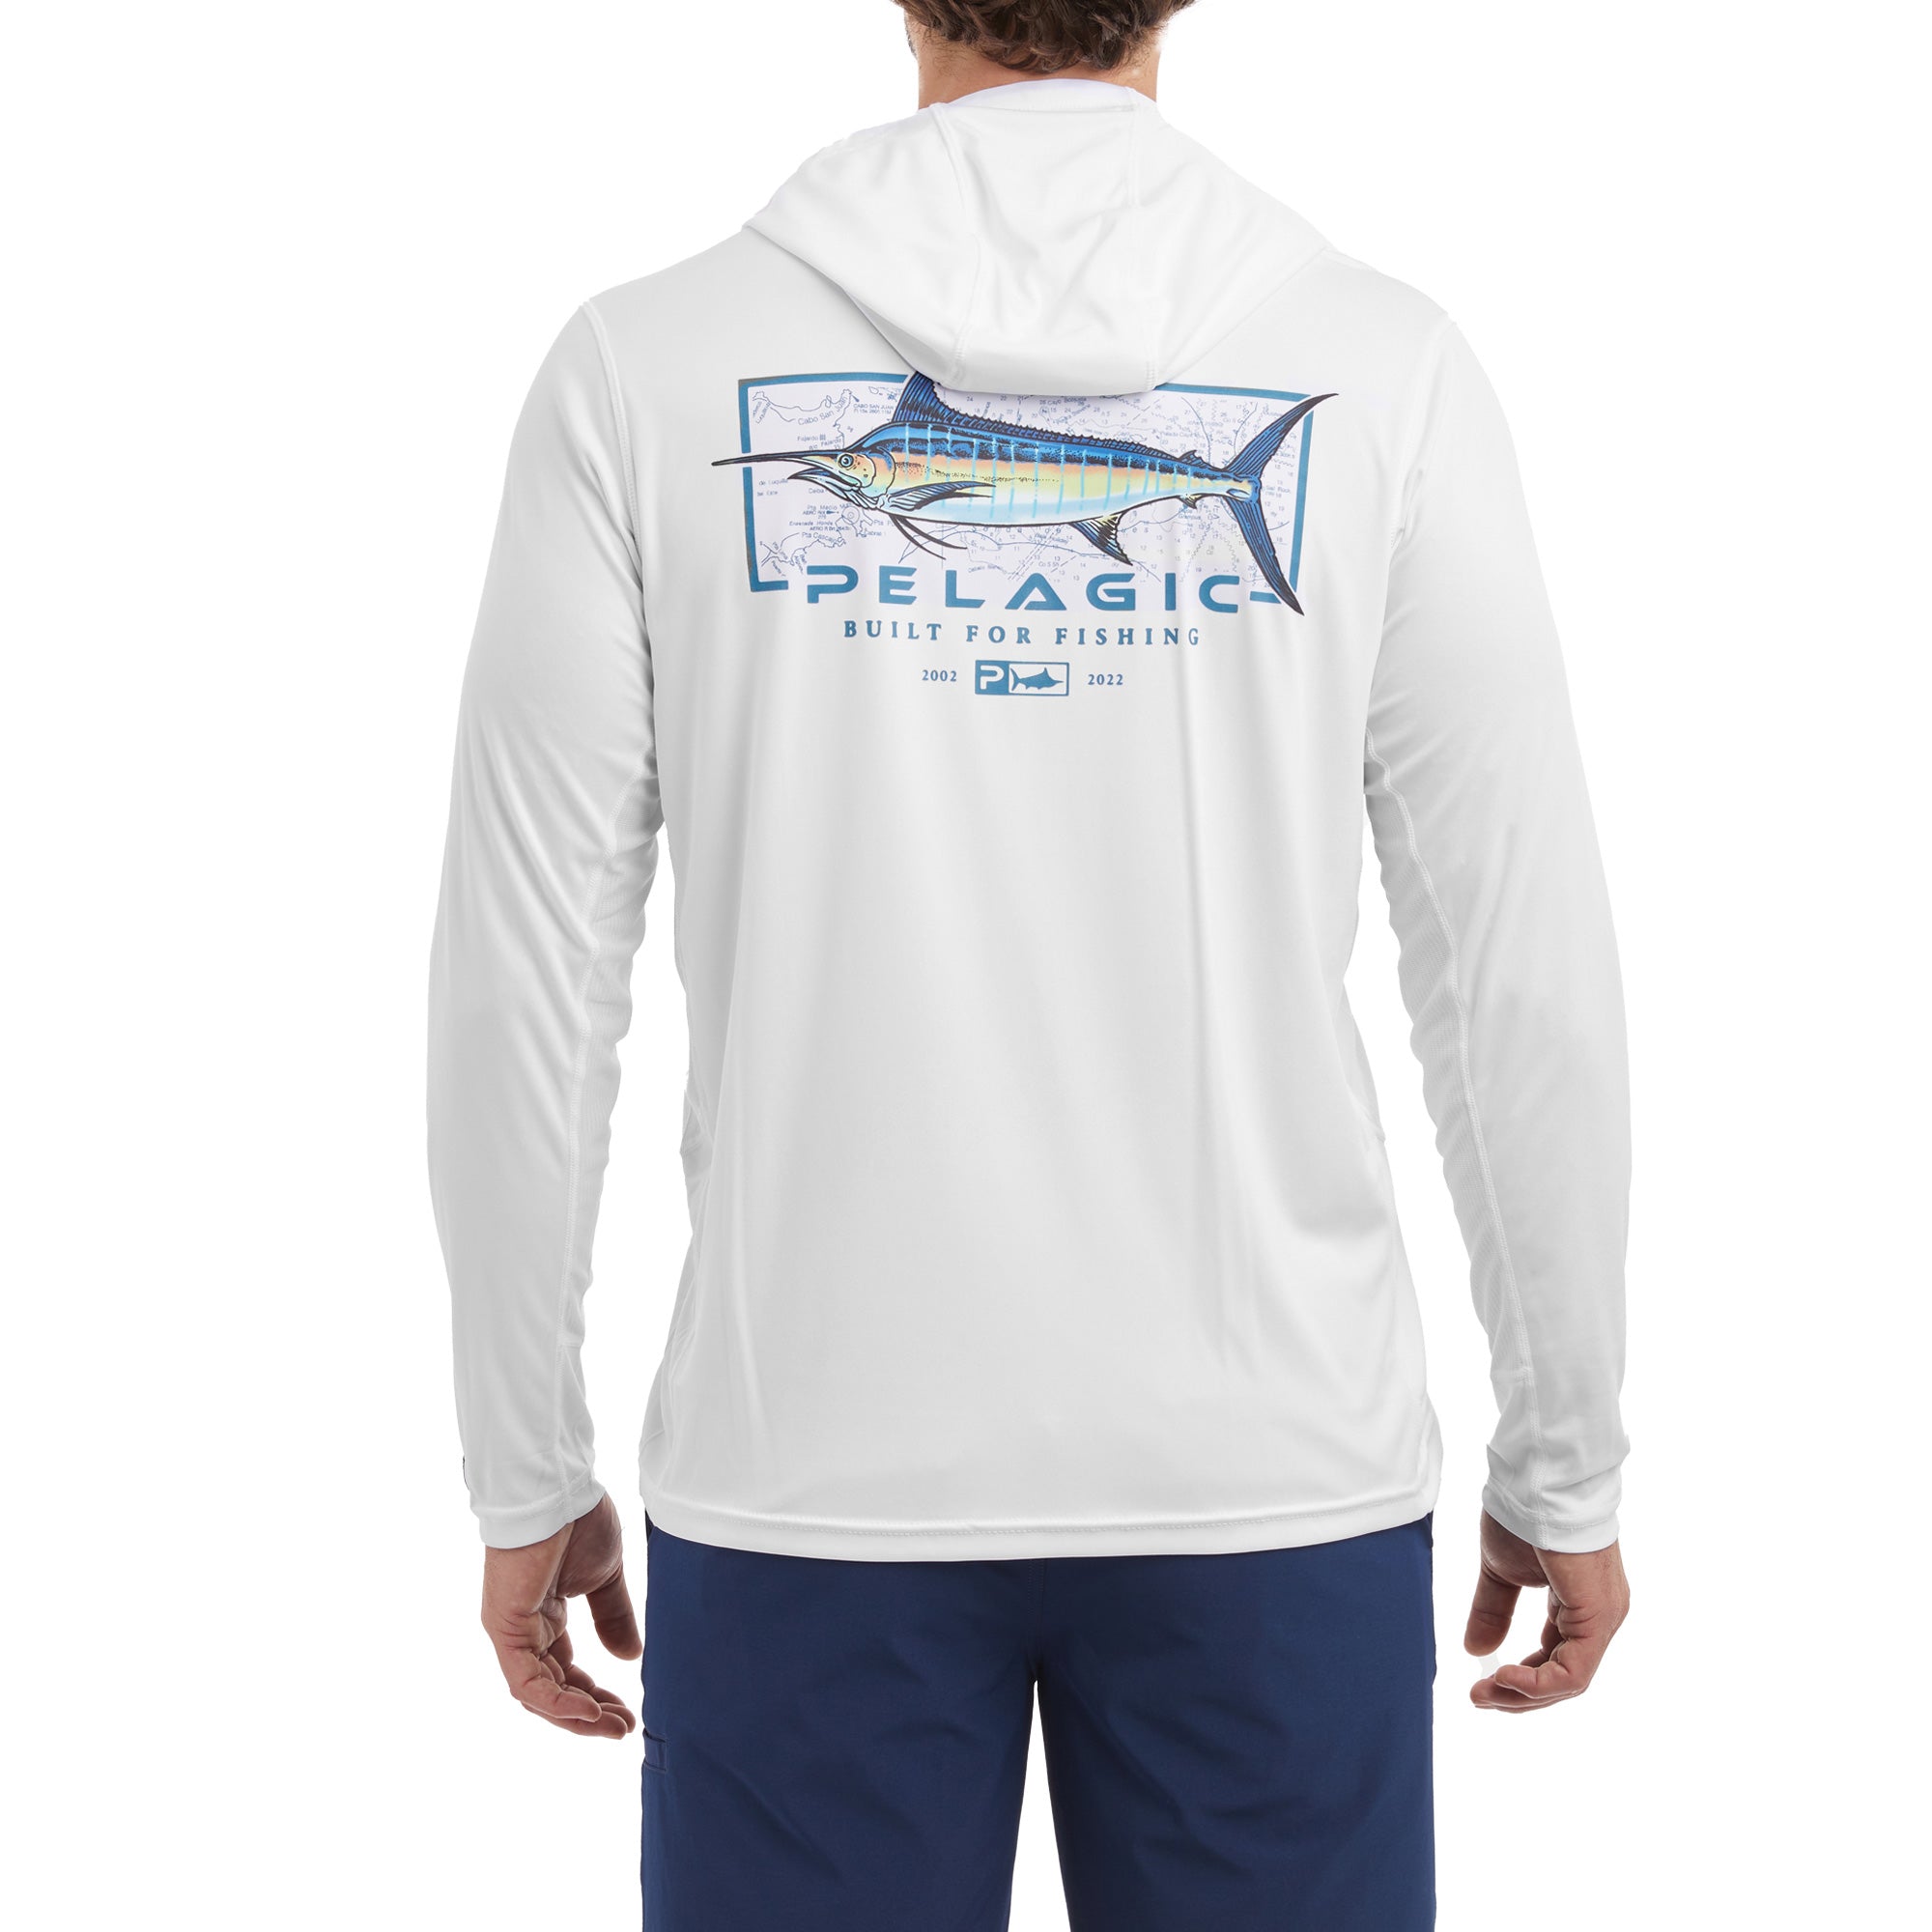 Vaportek Marlin Minds Hooded Fishing Shirt